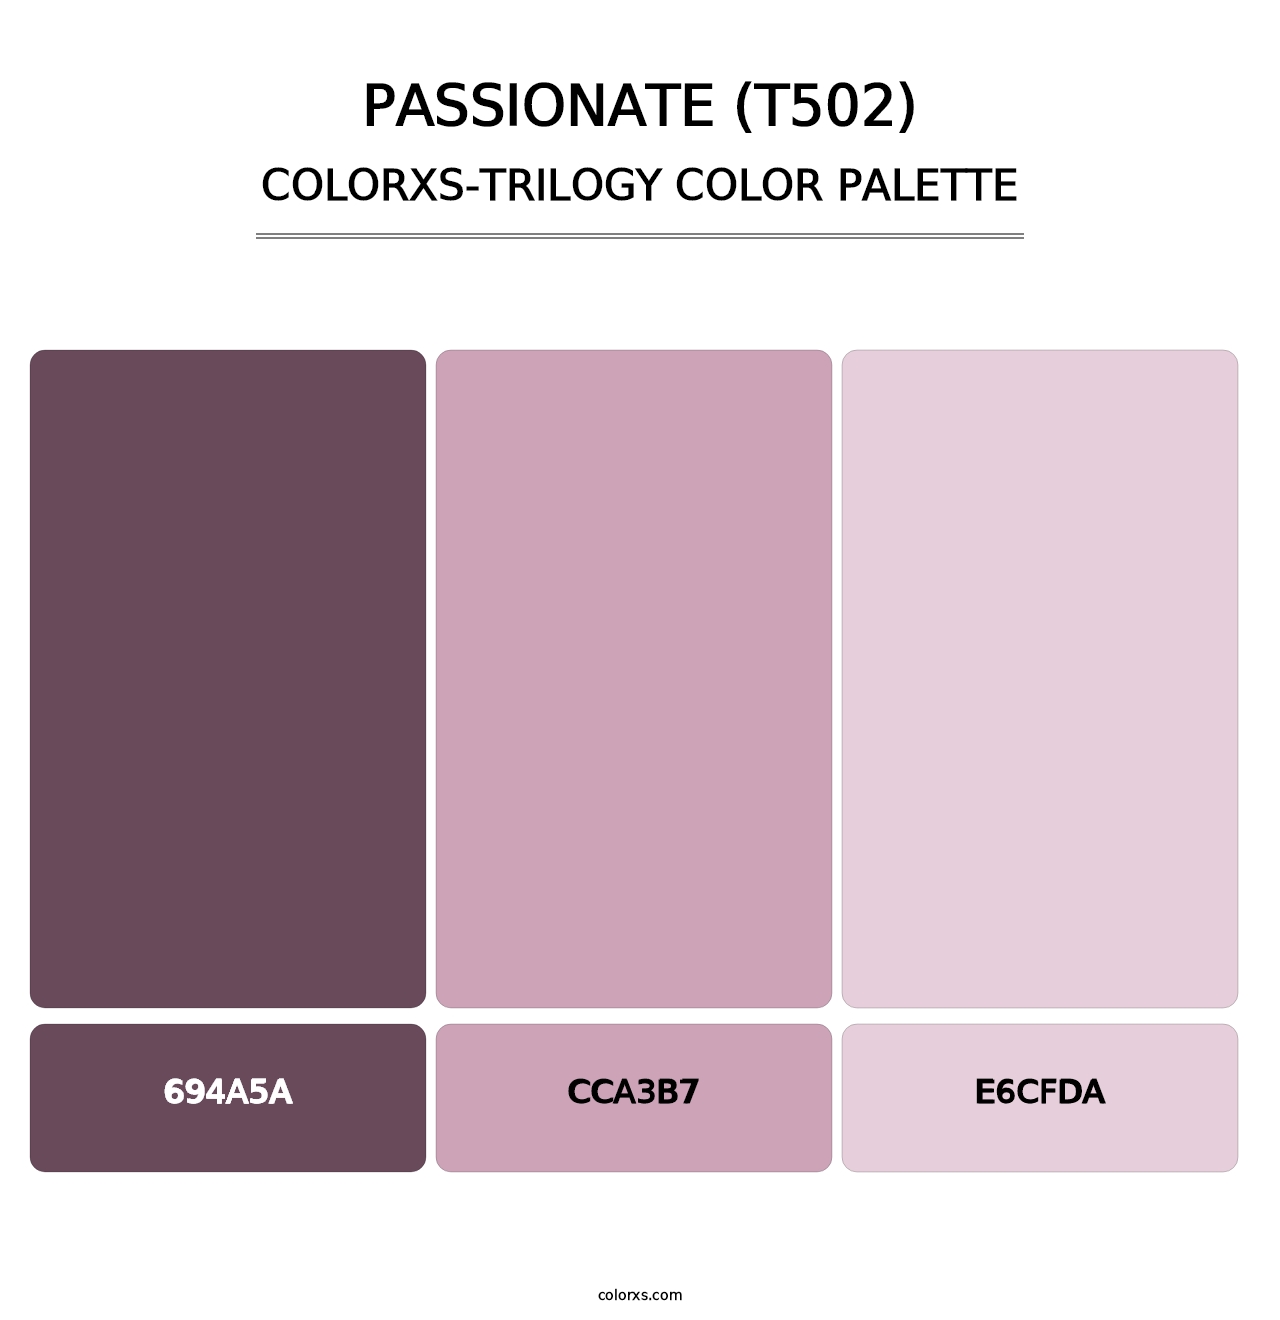 Passionate (T502) - Colorxs Trilogy Palette